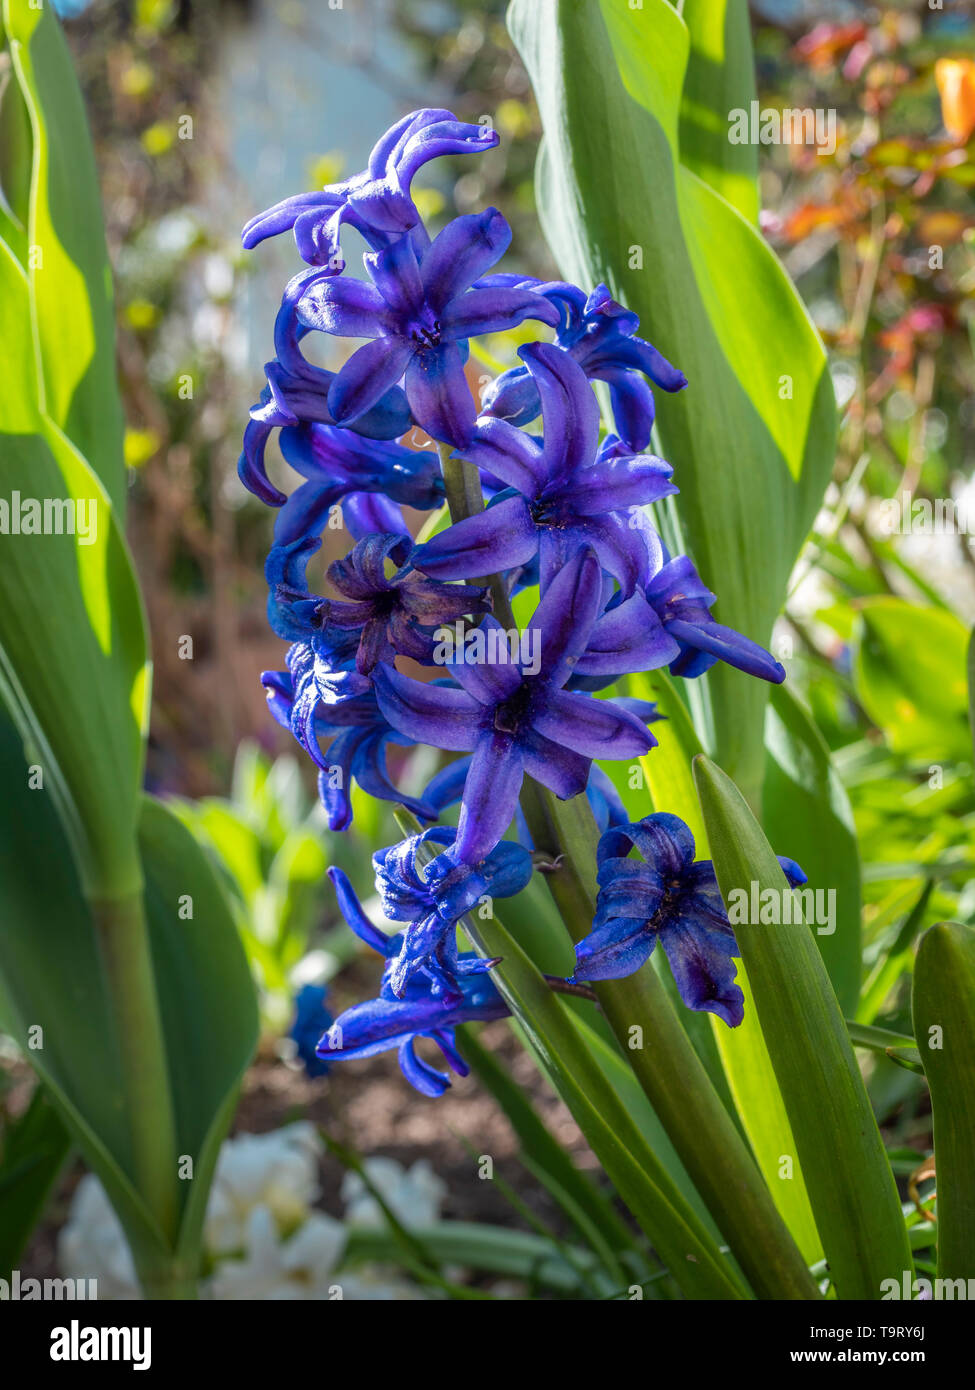 Blue Garden hyacinth, jacinthe (Hyacinthus), de la famille des Asparagacées (plantes d'asperges), Blaue Gartenhyazinthe, Hyazinthe (Hyacinthus), Familie der Banque D'Images